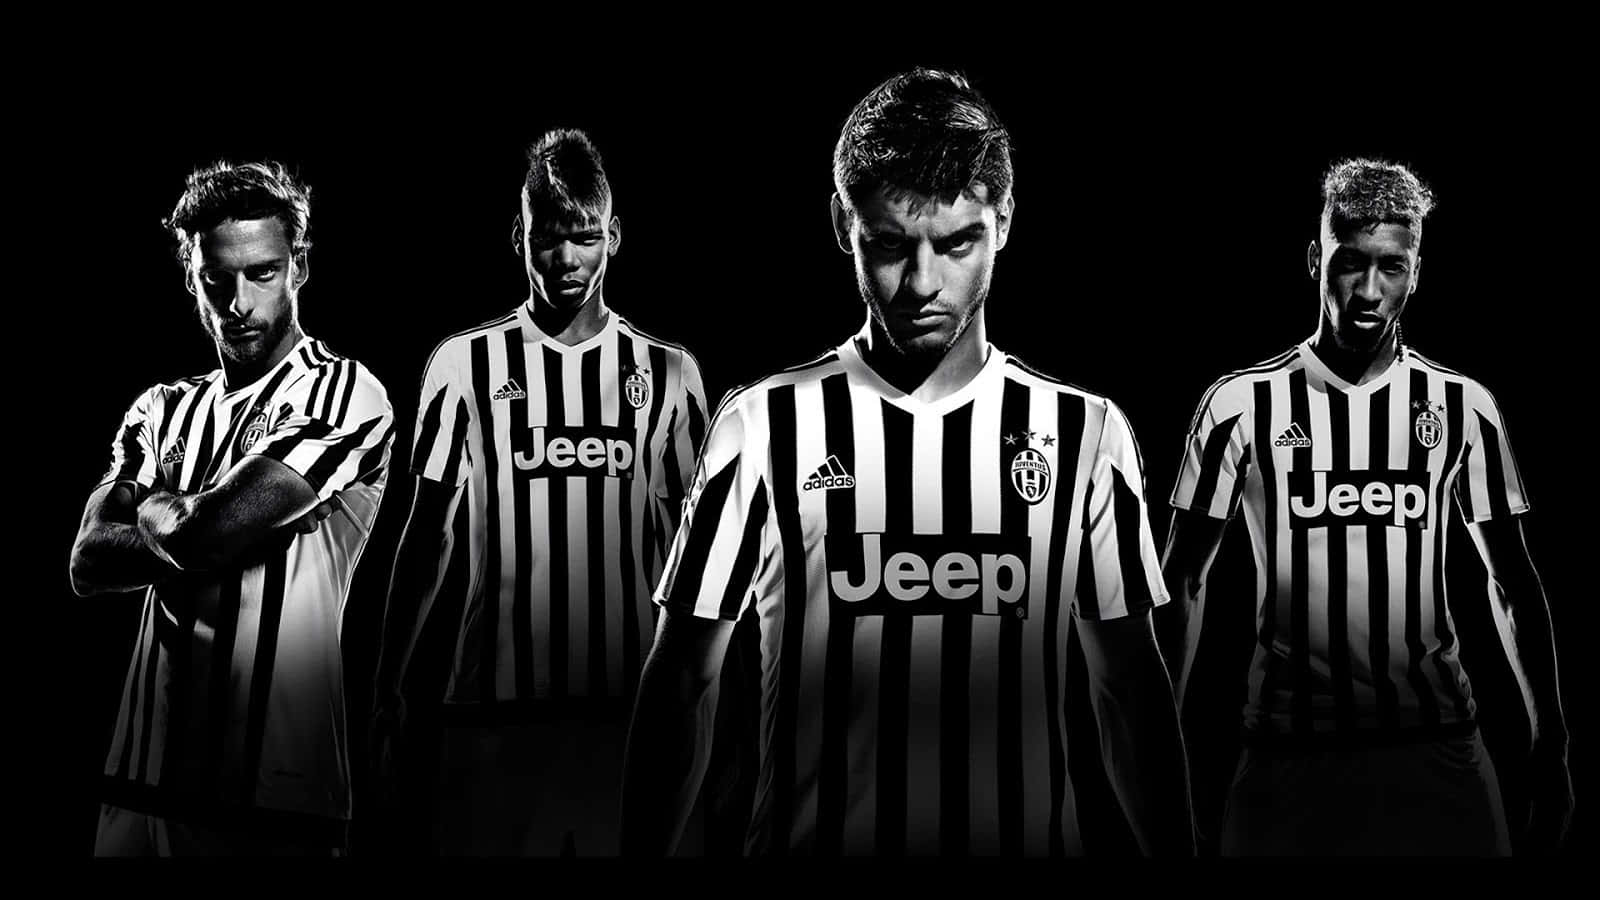 The Juventus Crest